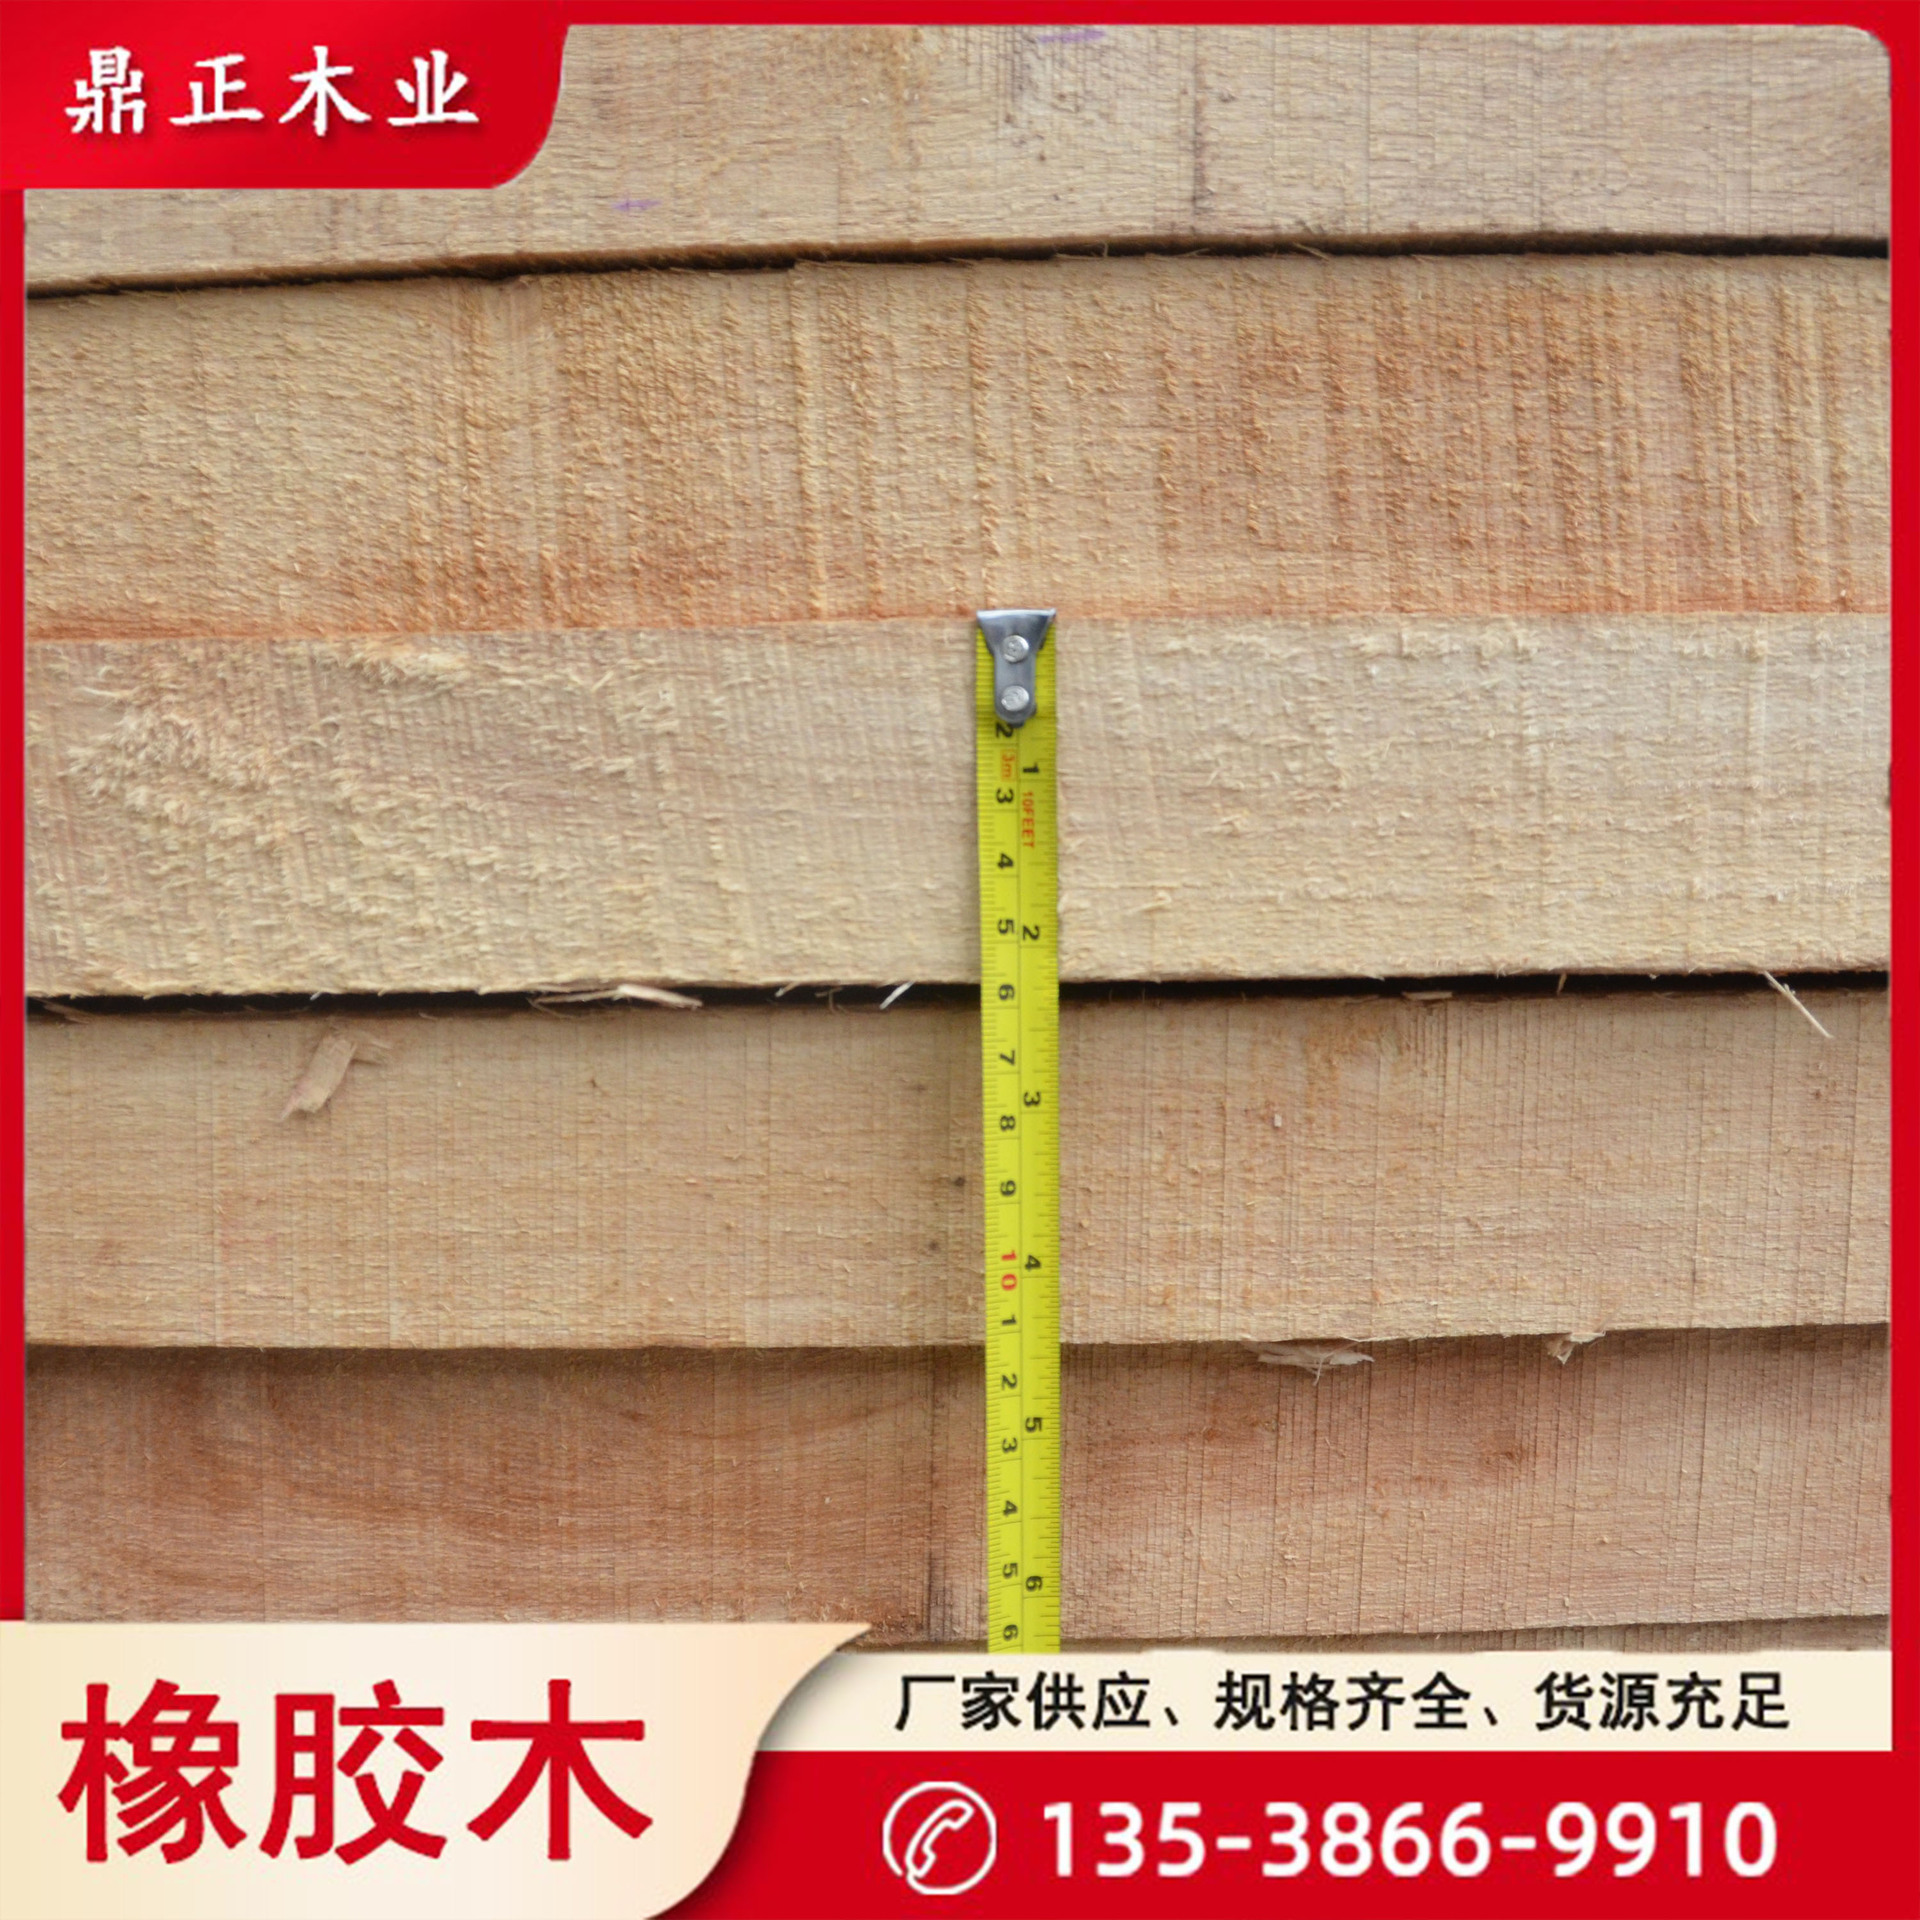 厂家供应门把手弯板泰国橡胶木55mm厚自然板fsc环保进口实木板材